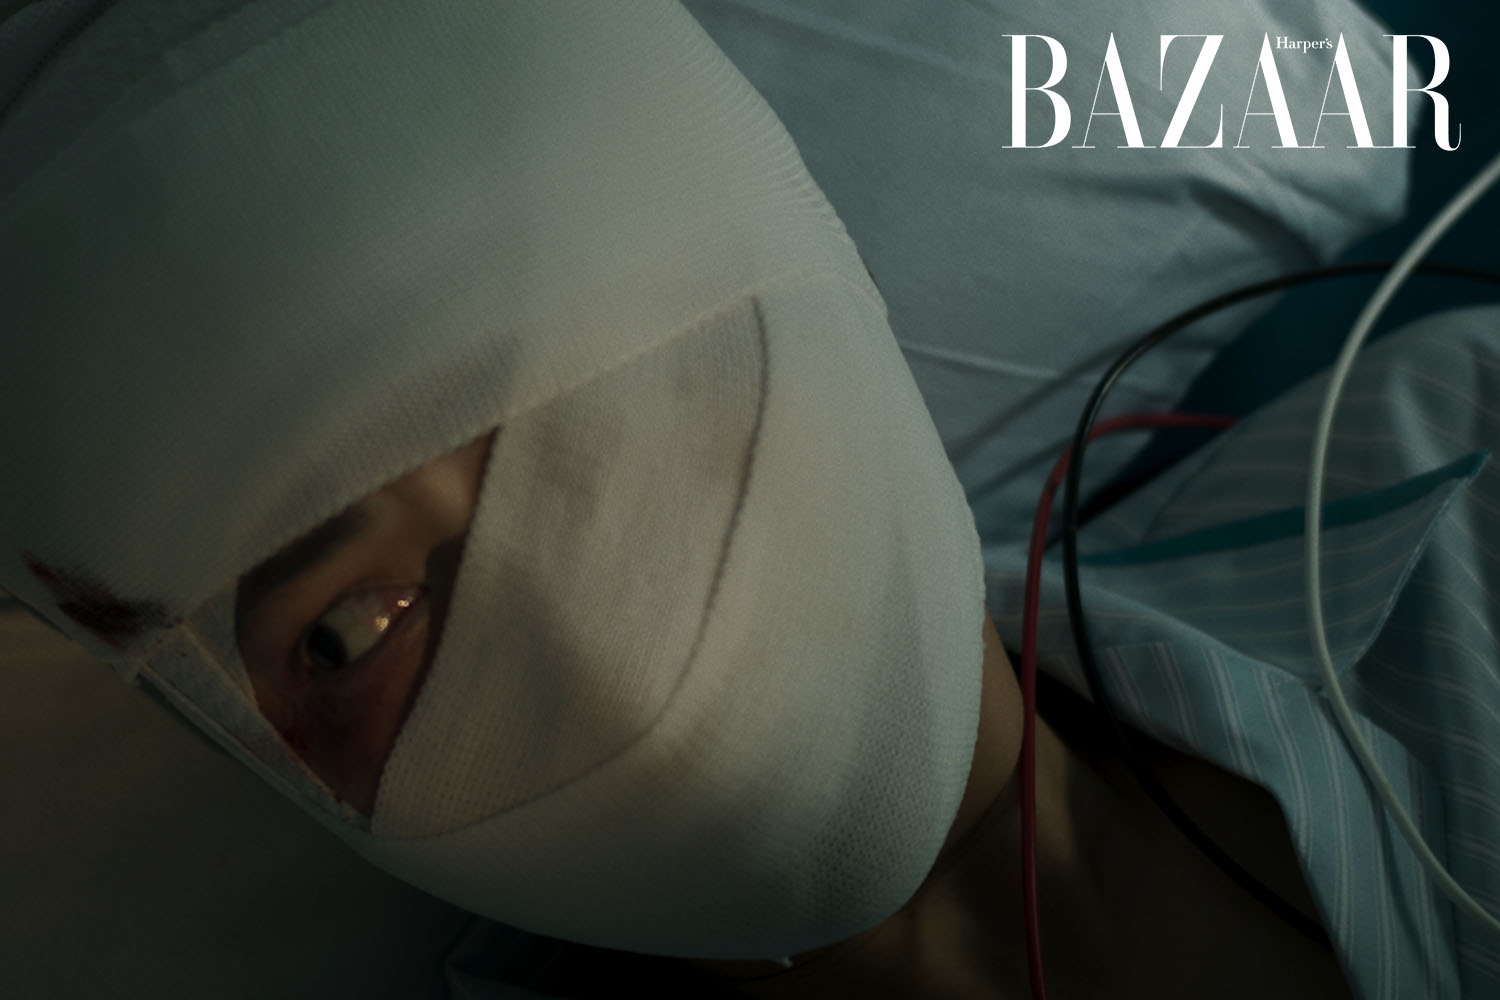 Harper's Bazaar_phim chiếu rạp vô diện sát nhân_05